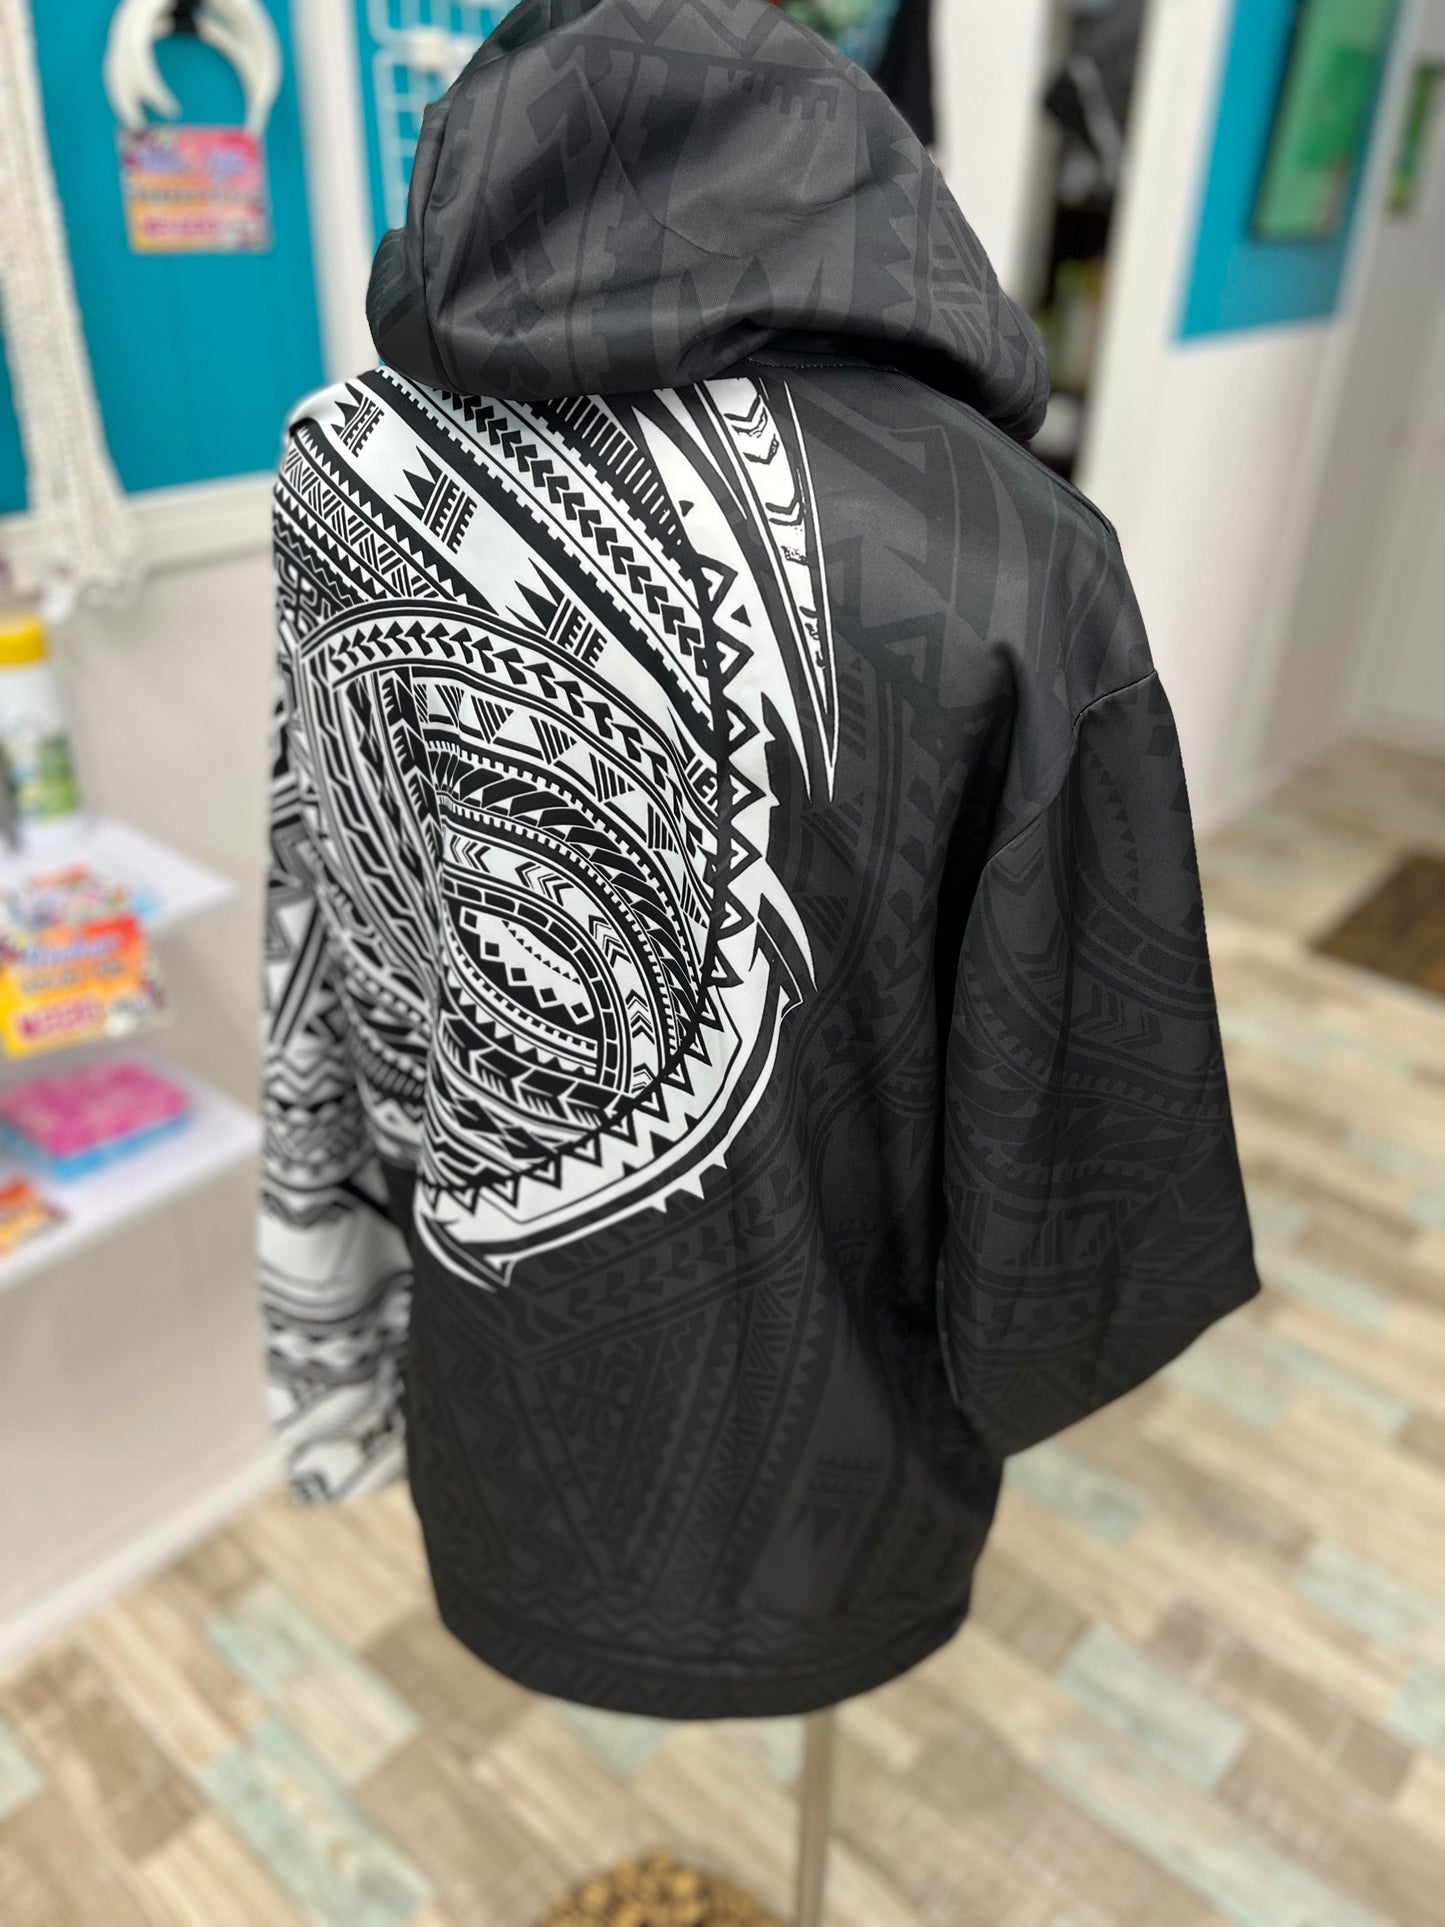 Tribal print hoodie